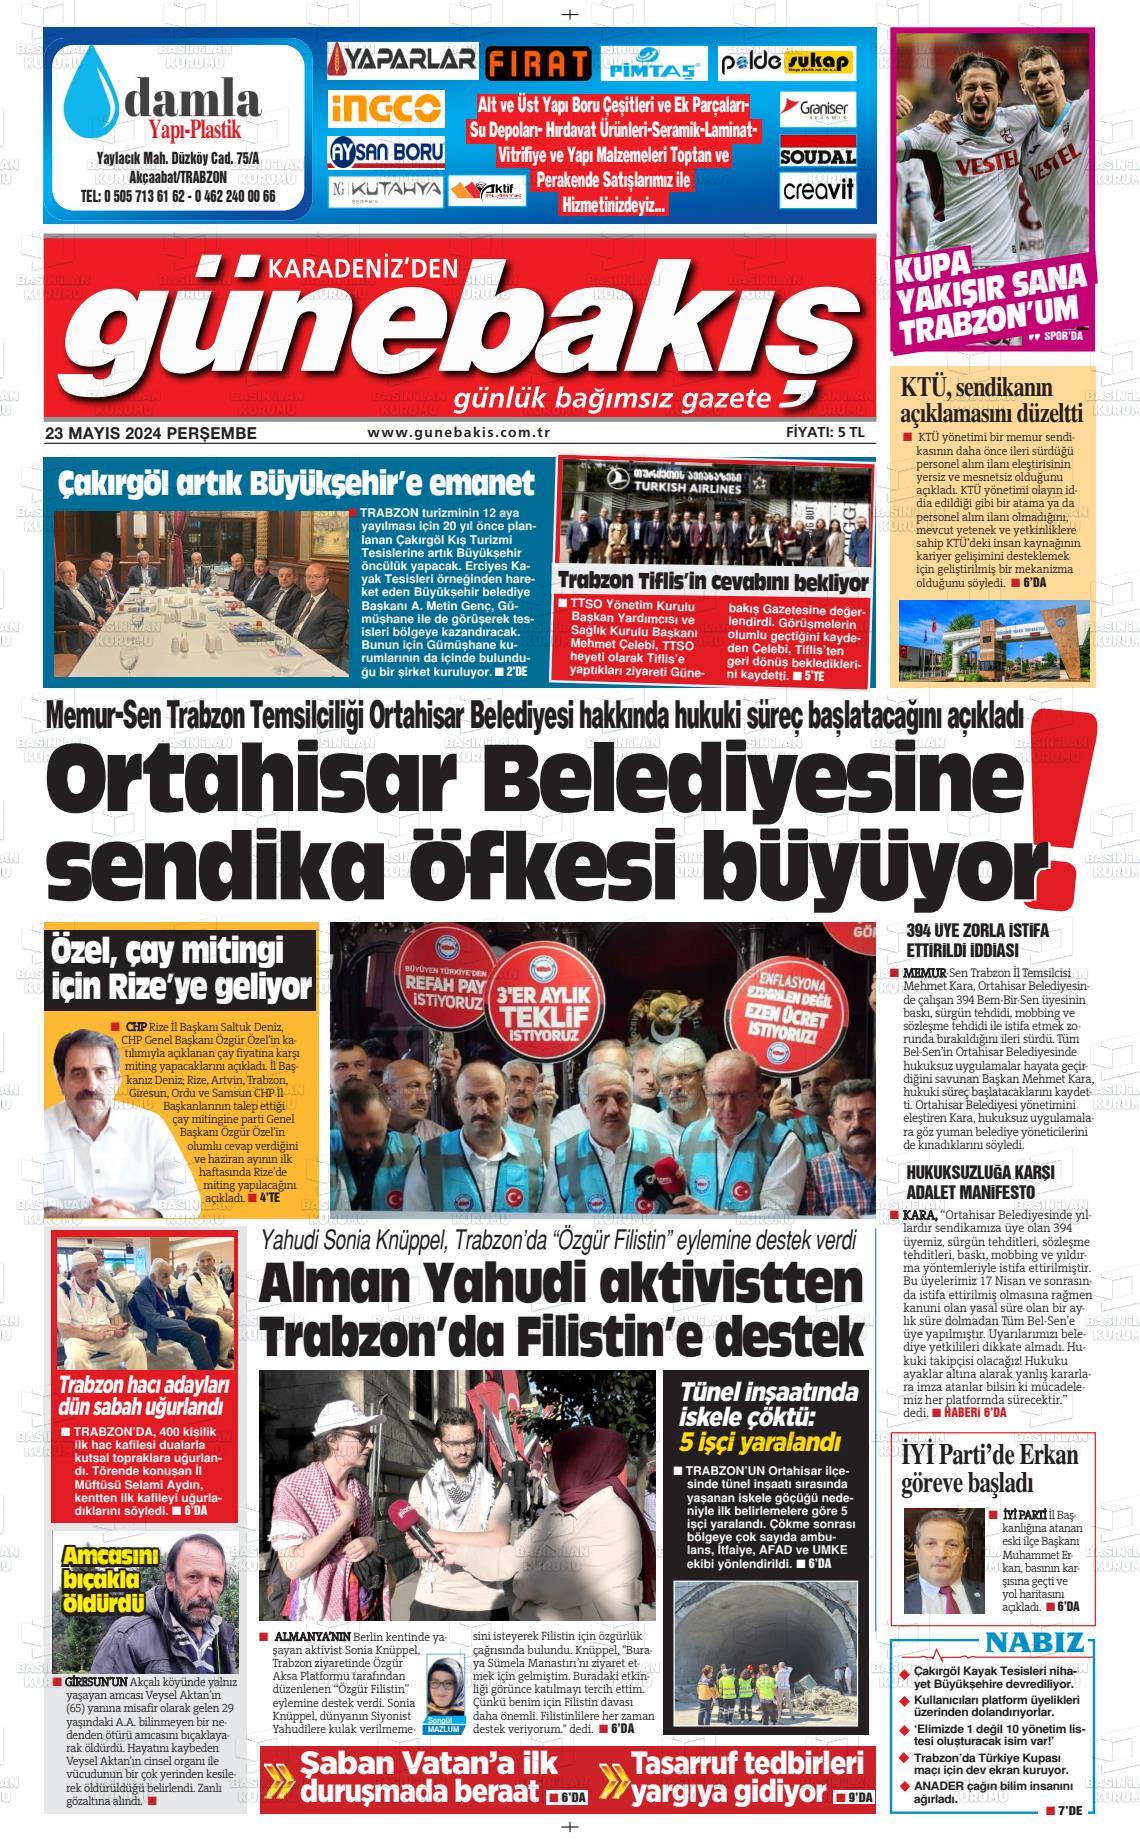 KARADENİZ'DEN GÜNEBAKIŞ Gazetesi